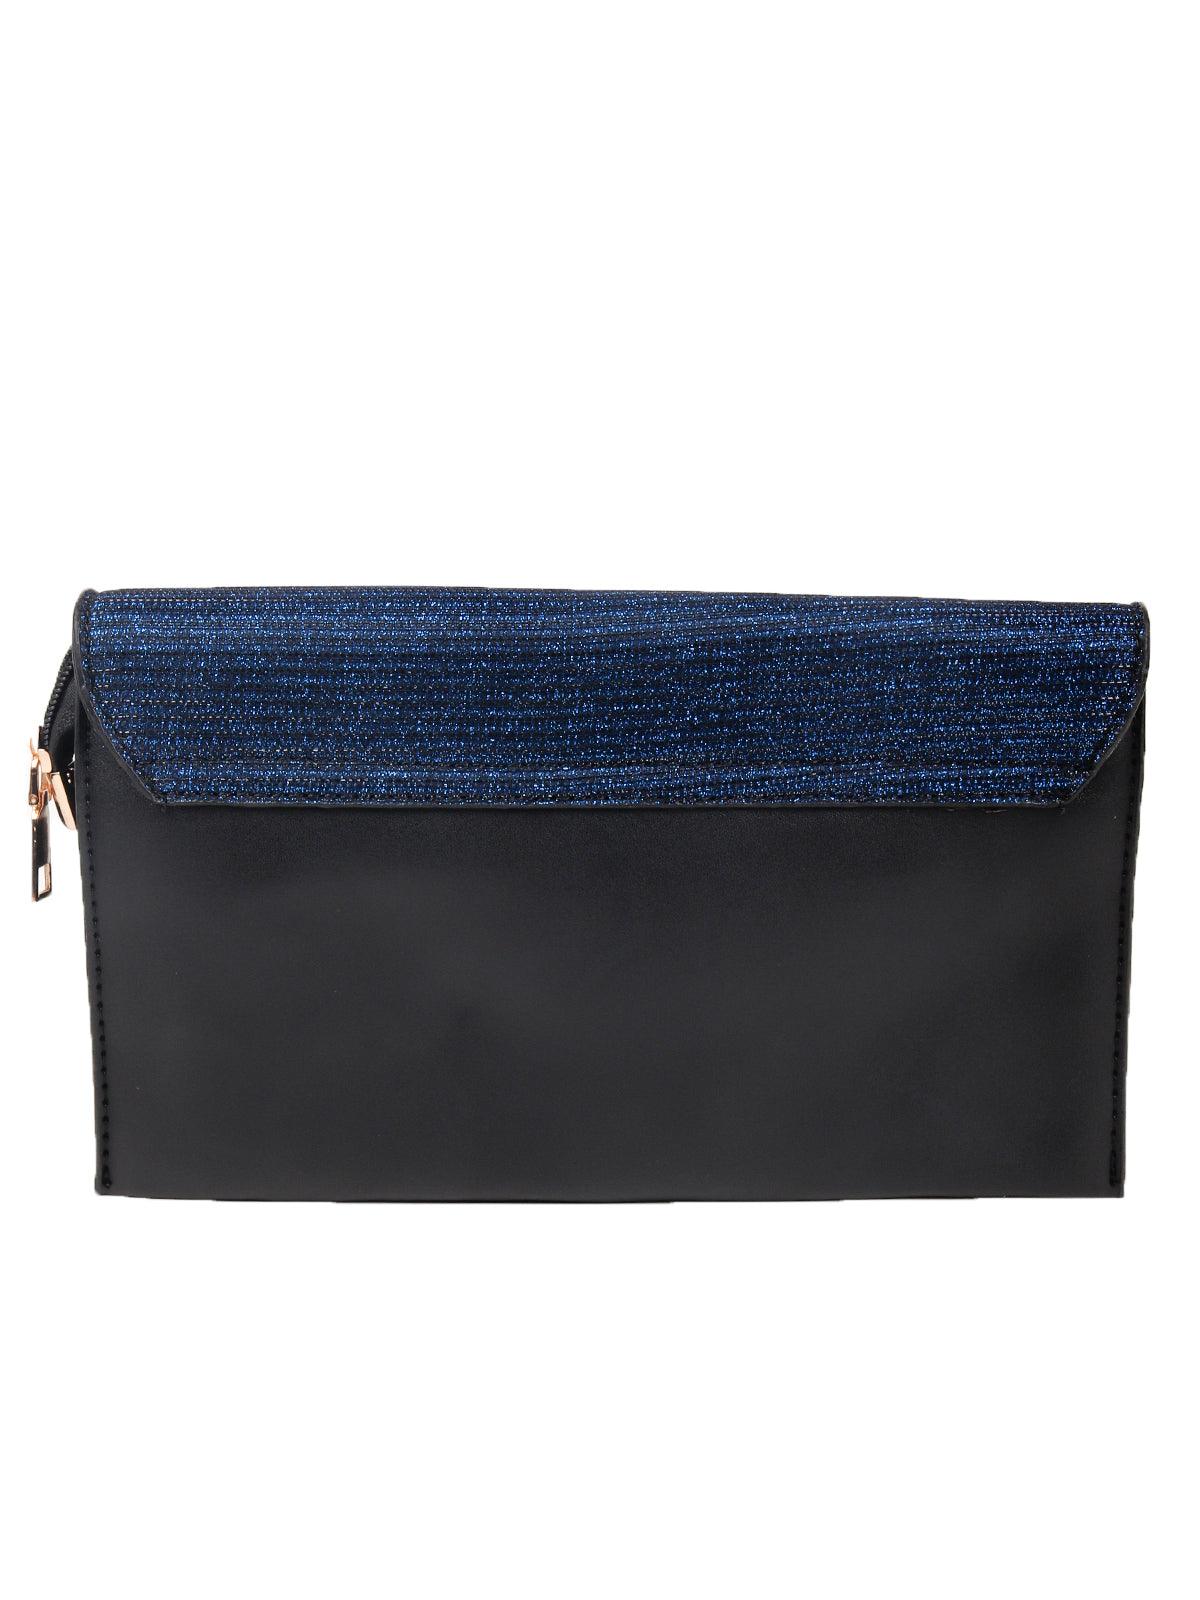 Shinning navy blue sling bag - Odette